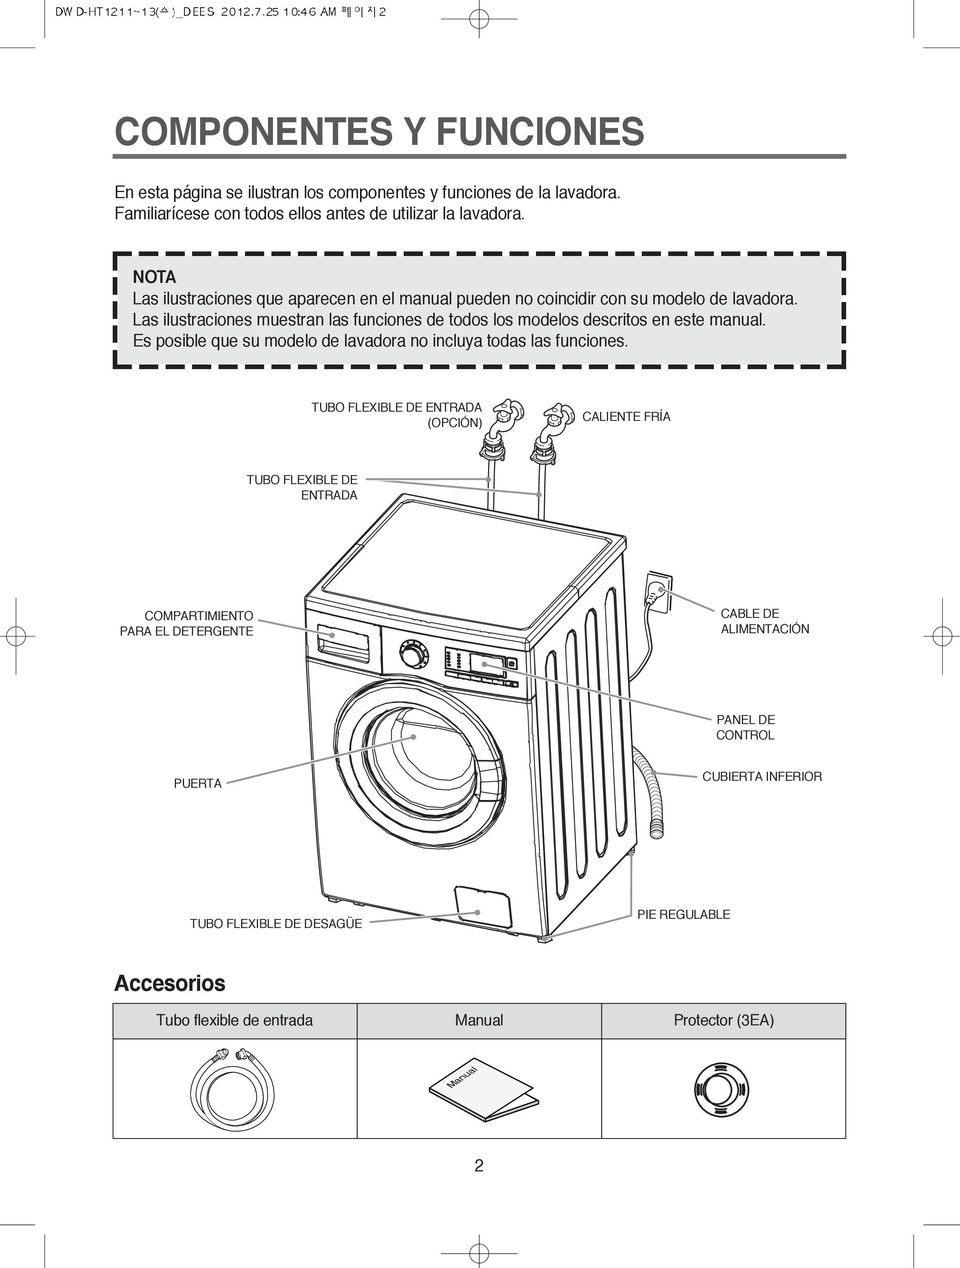 Las ilustraciones muestran las funciones de todos los modelos descritos en este manual. Es posible que su modelo de lavadora no incluya todas las funciones.